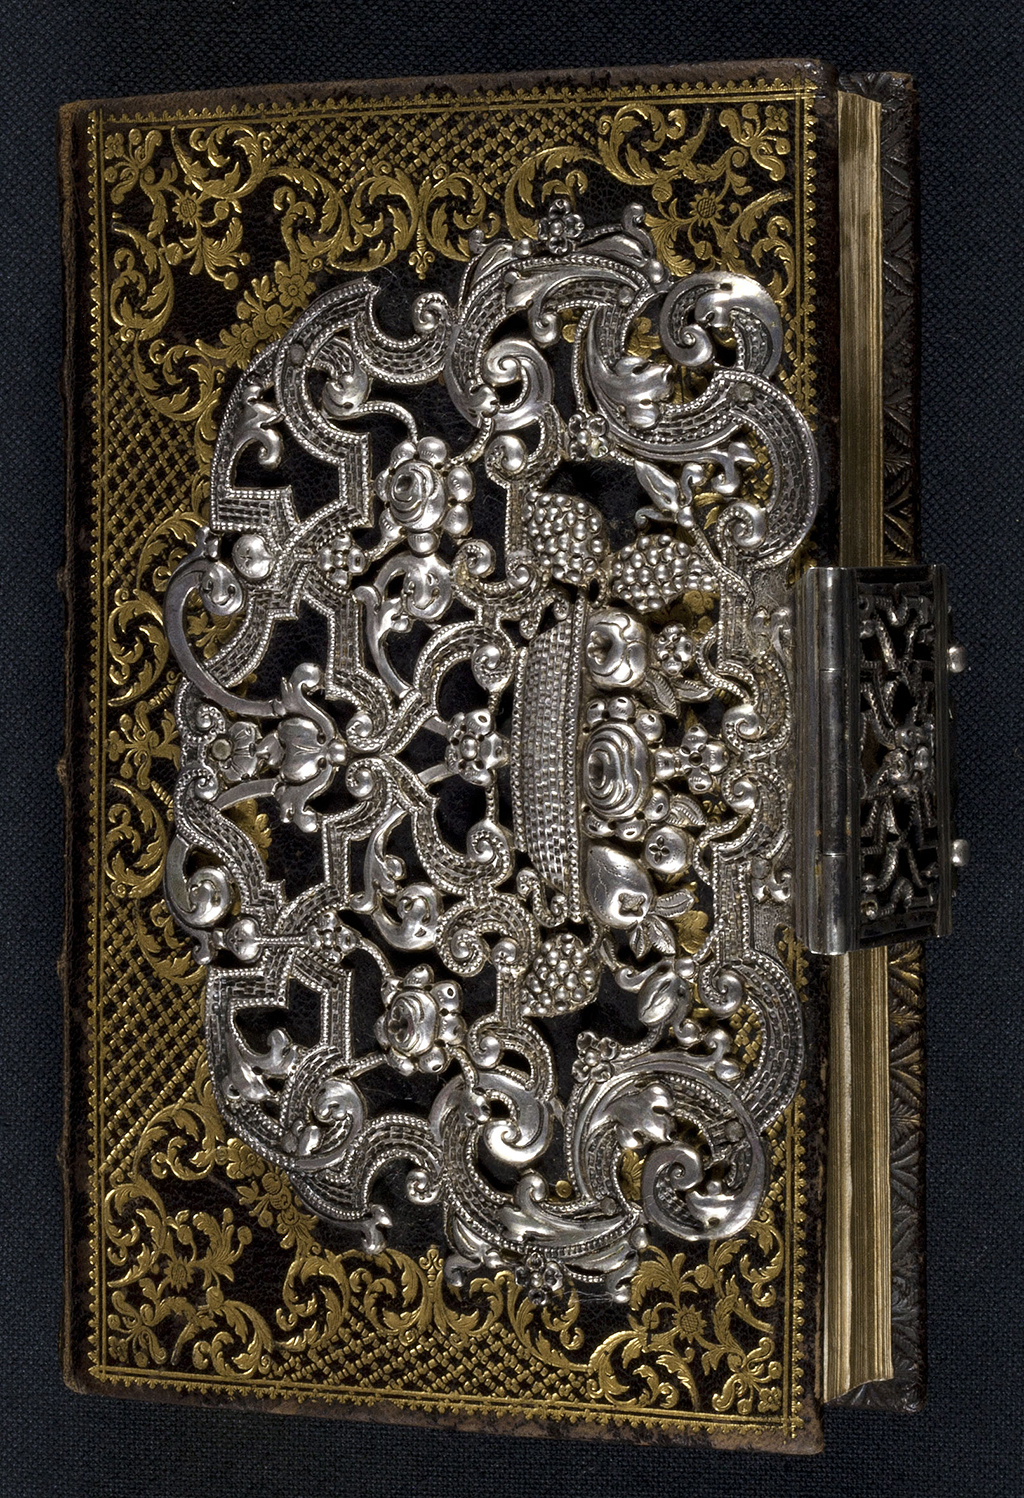 Dem mit Goldprägung reich verzierten Ledereinband ist eine Applikation aus Silber aufgebracht, welche die Schließe in der Mitte des Vorderschnitts umgreift. Der Silberschmuck besteht aus reichem Bandwerk mit floralen Ornamenten. Der Band stammt aus der Zeit um 1750.